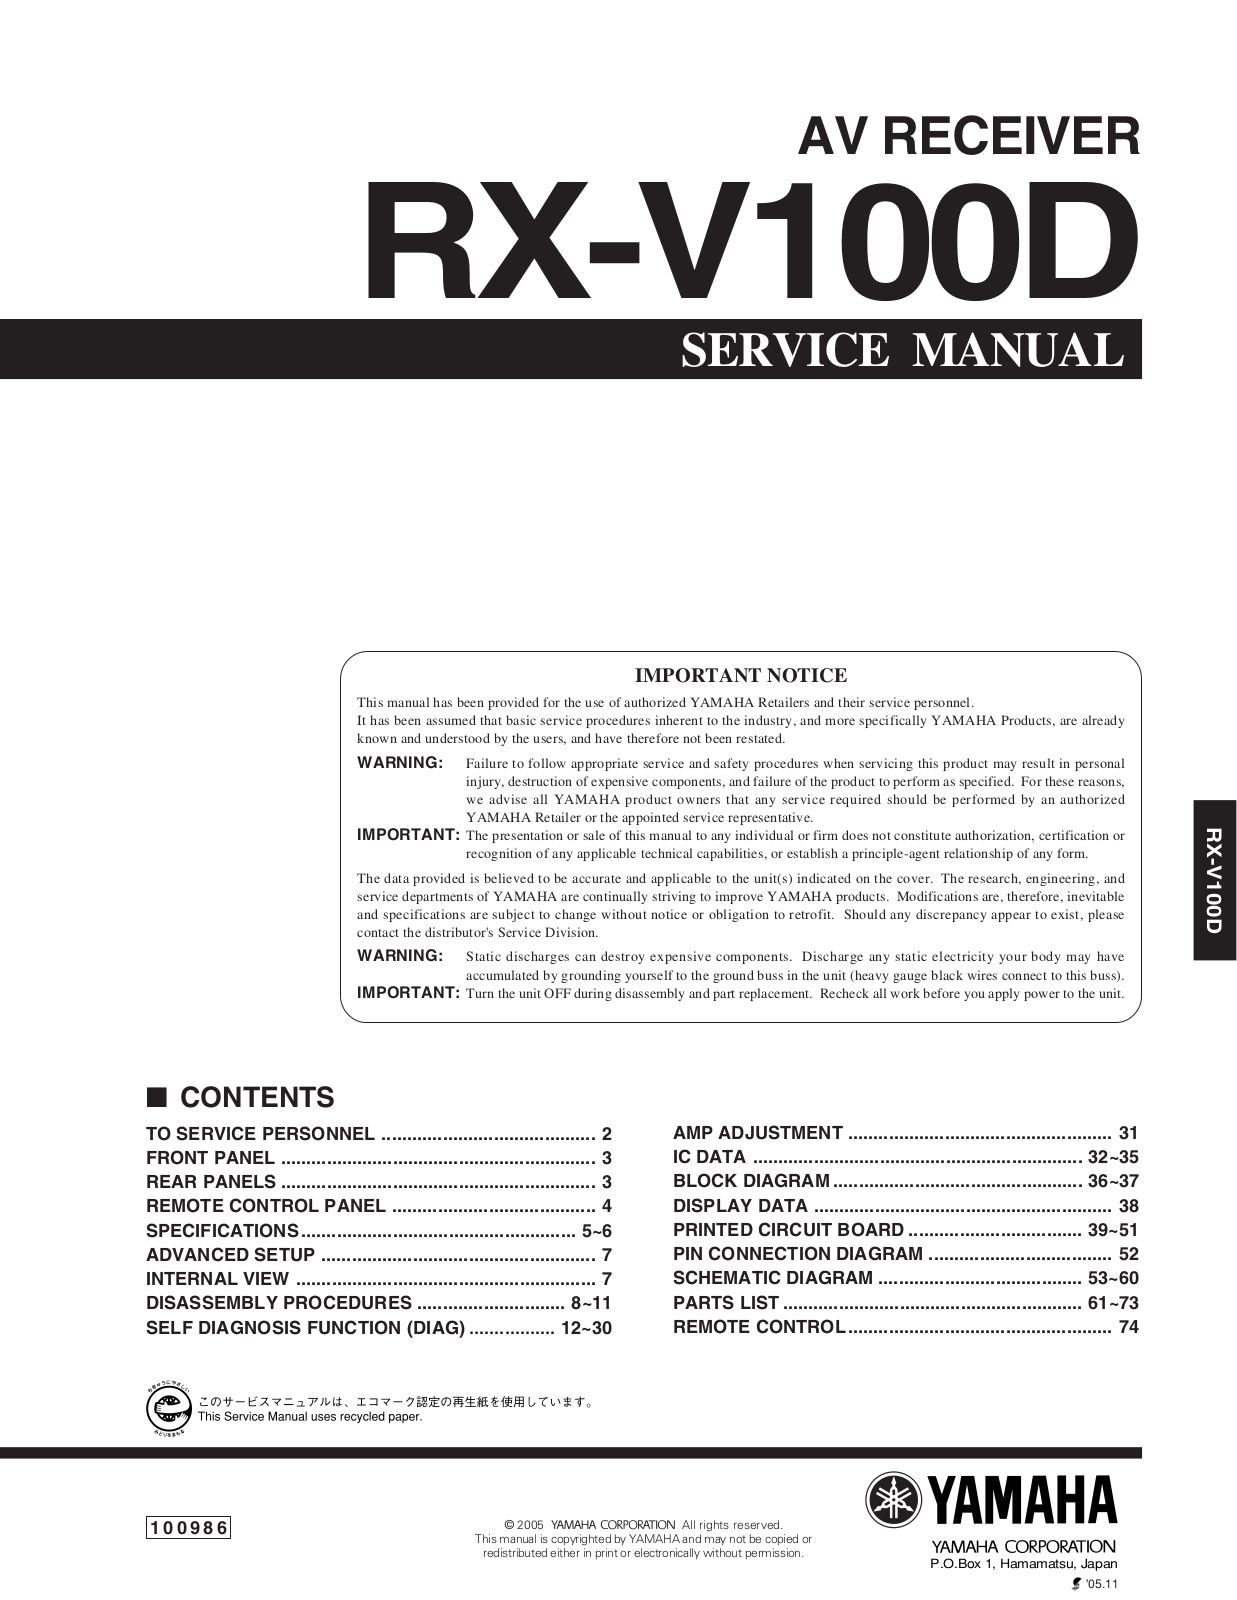 Yamaha RXV-100-D Service manual